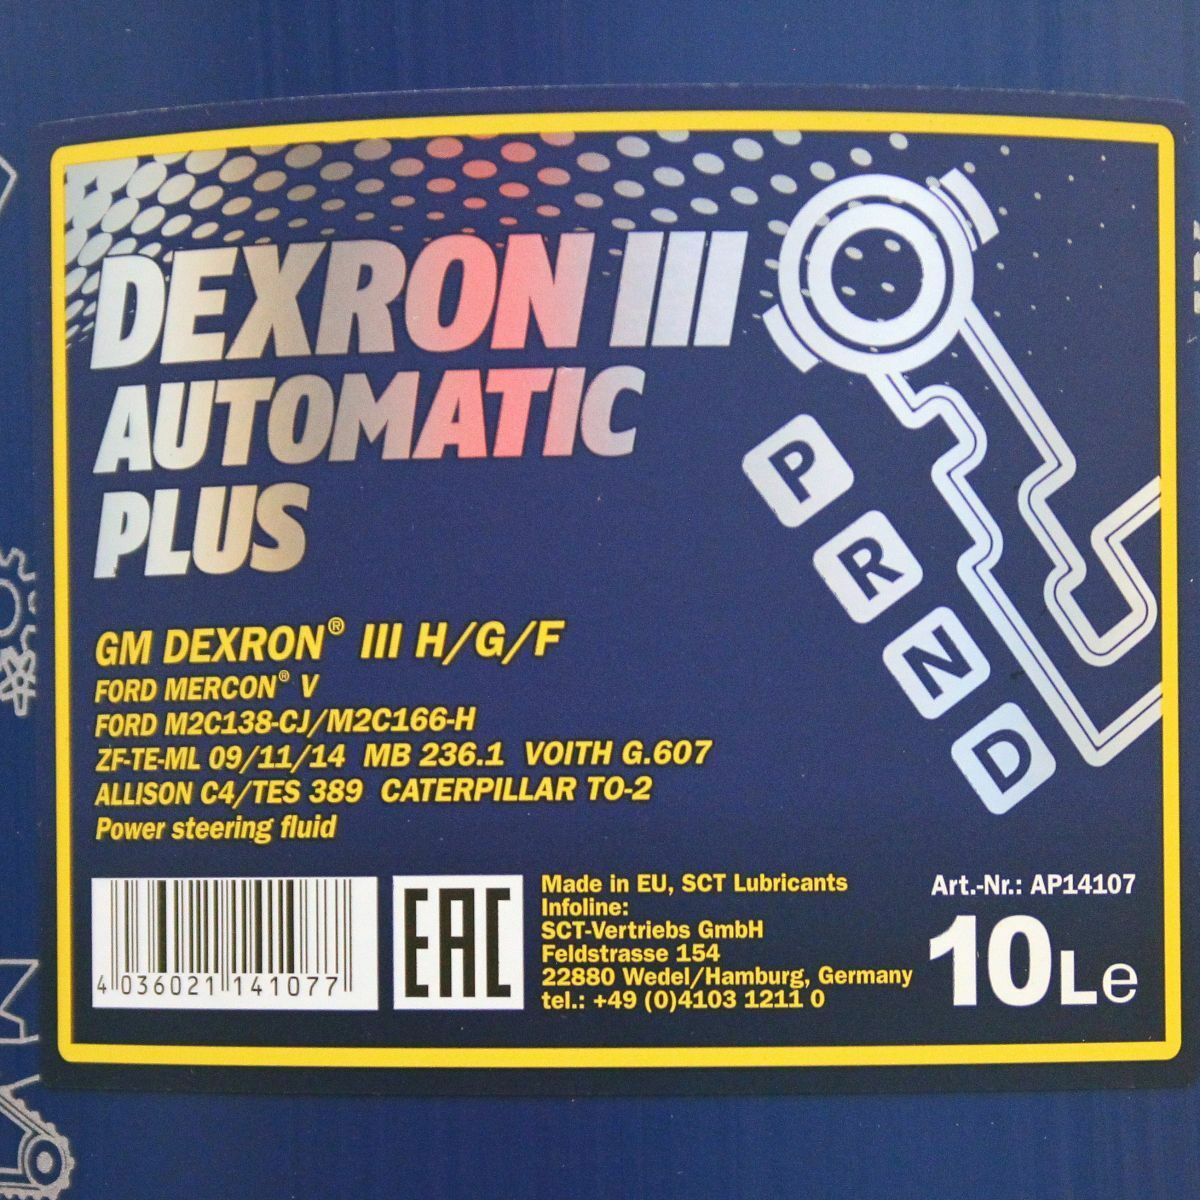 30L (3x10) MANNOL 8206 Dexron III H G F Automatic Plus Automatikgetriebeöl MB 236.1 ATF